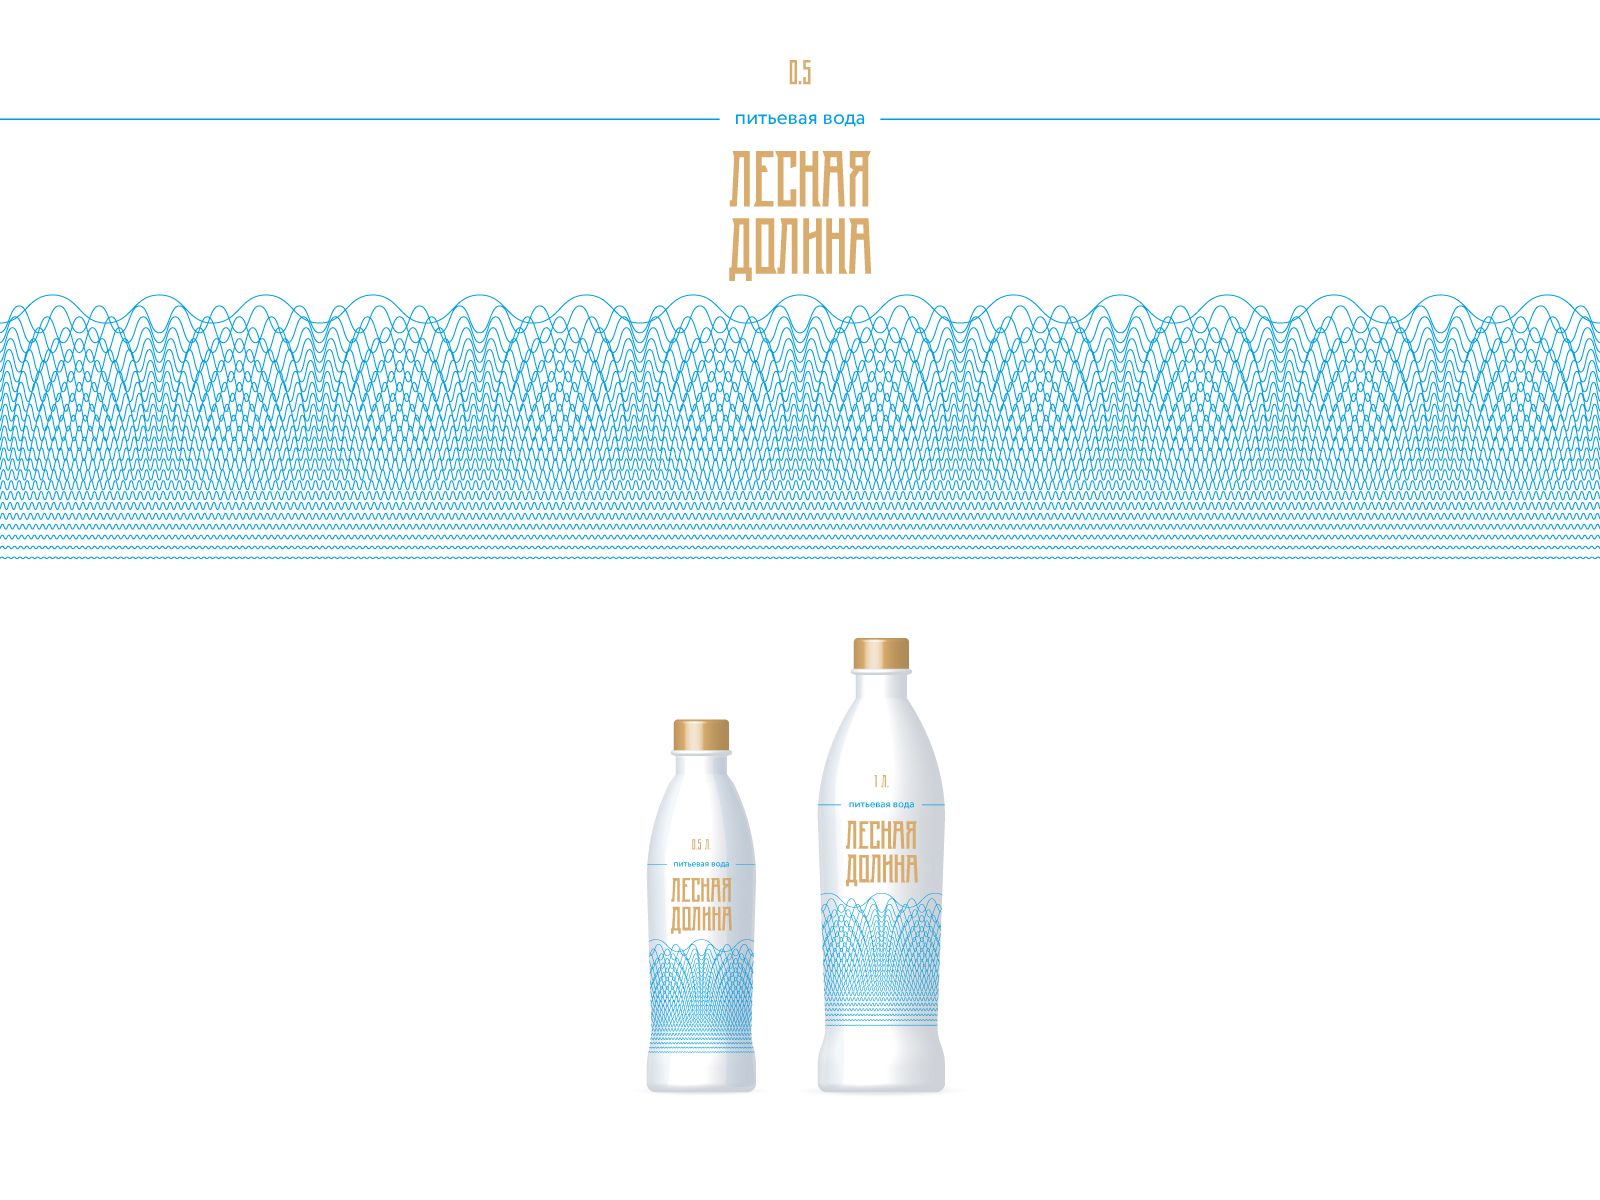 Дизайн этикетки для питьевой воды  - дизайнер NukkklerGOTT